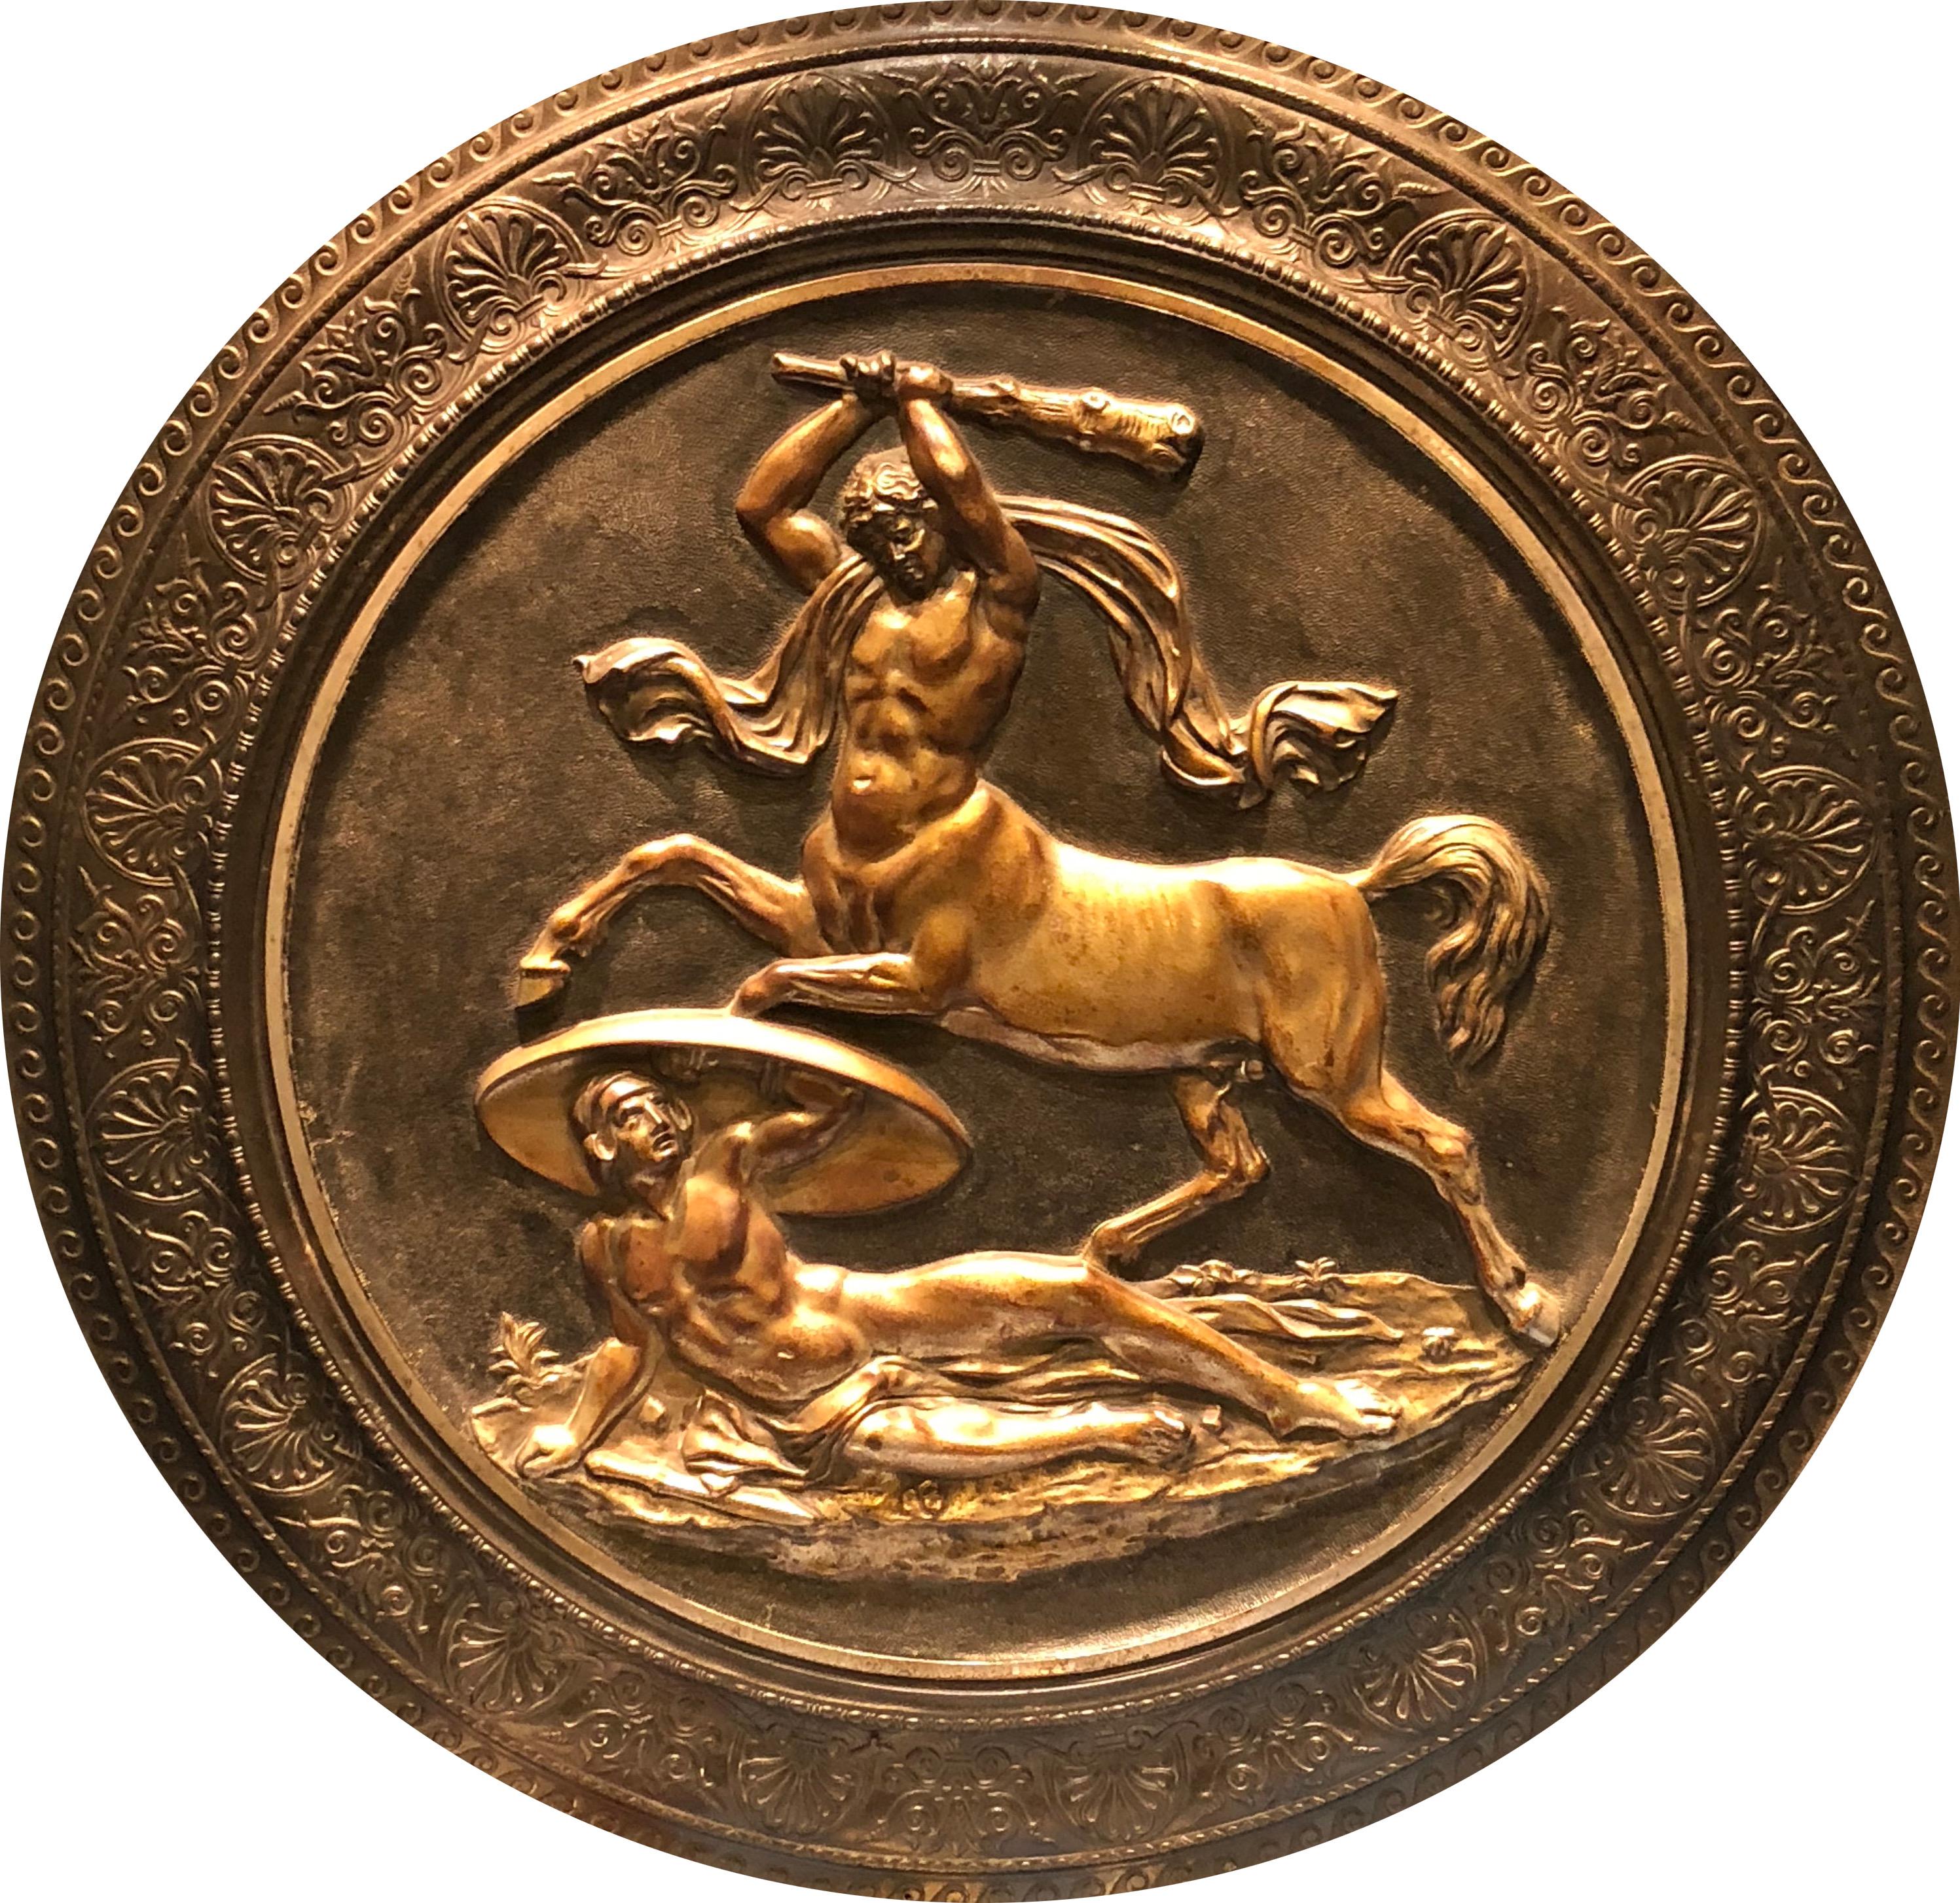 Grand rondeau en bronze avec une scène mythologique représentant Hercule combattant un centaure.  France, vers le XIXe siècle.